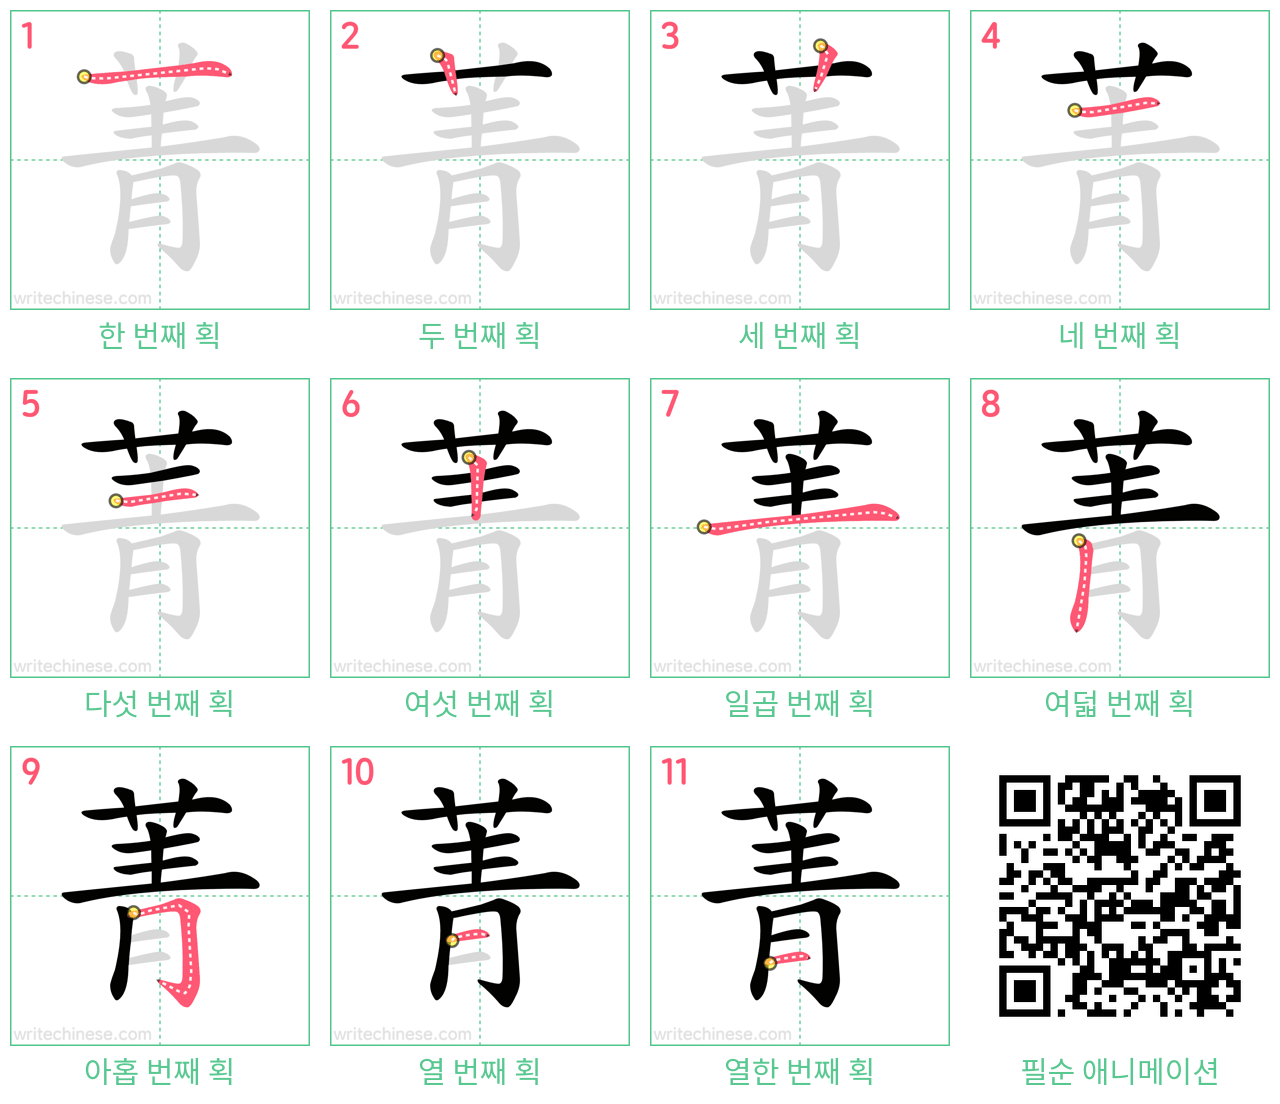 菁 step-by-step stroke order diagrams